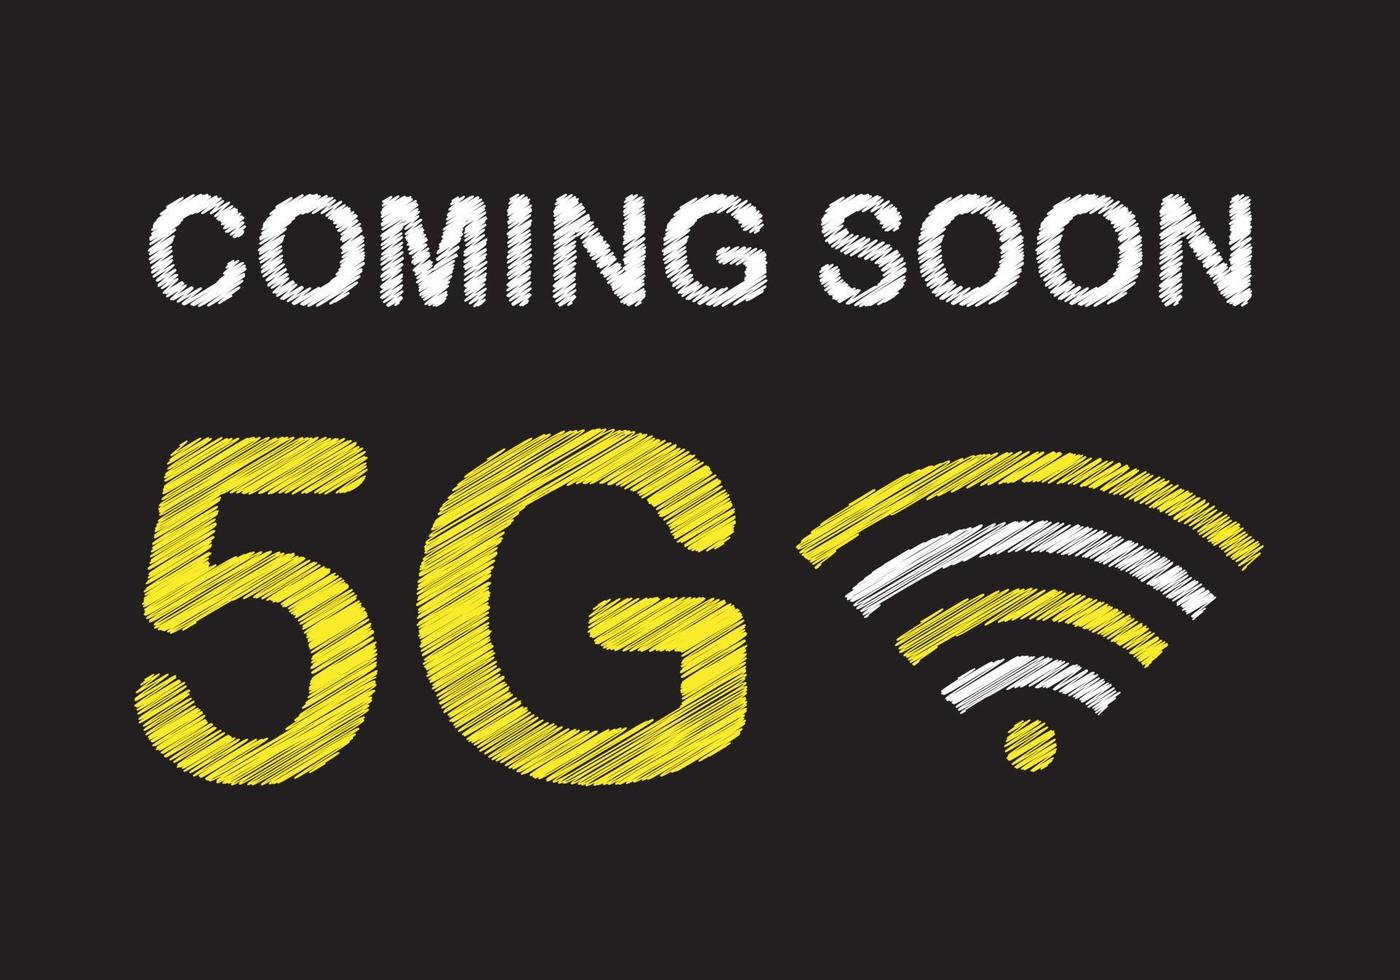 em breve 5g escrevendo na lousa preta. o conceito de rede 5g, internet móvel de alta velocidade. vetor